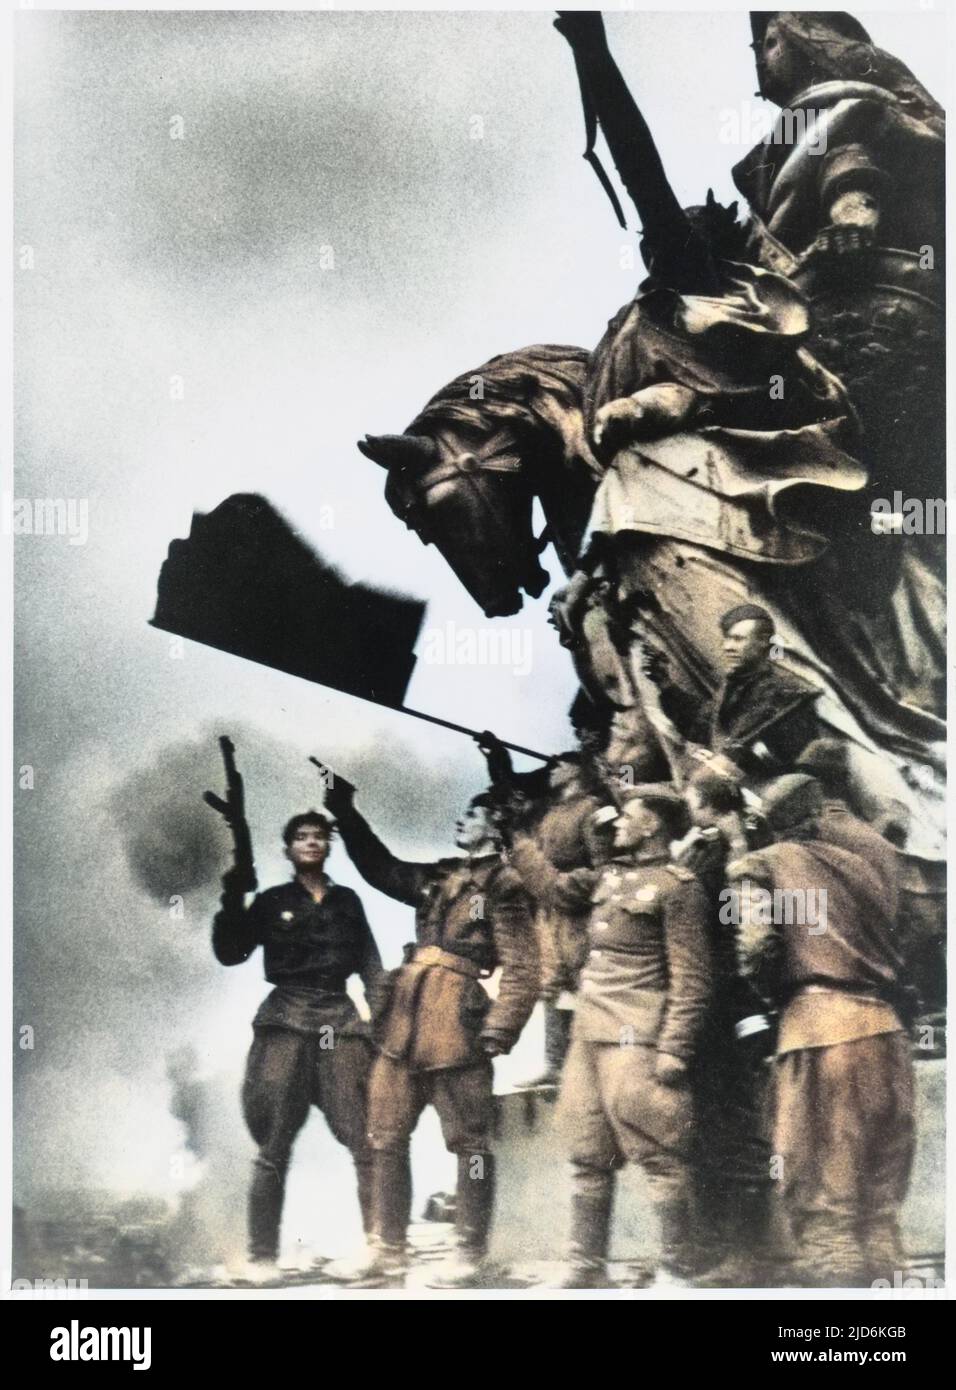 Russische Soldaten der Armee von Marschall Schukow errichten die Rote Fahne auf dem Reichstag, Berlin - am folgenden Tag wird Deutschland formell kapitulieren Colorized Version von: 10059765 Datum: 01-Mai-45 Stockfoto